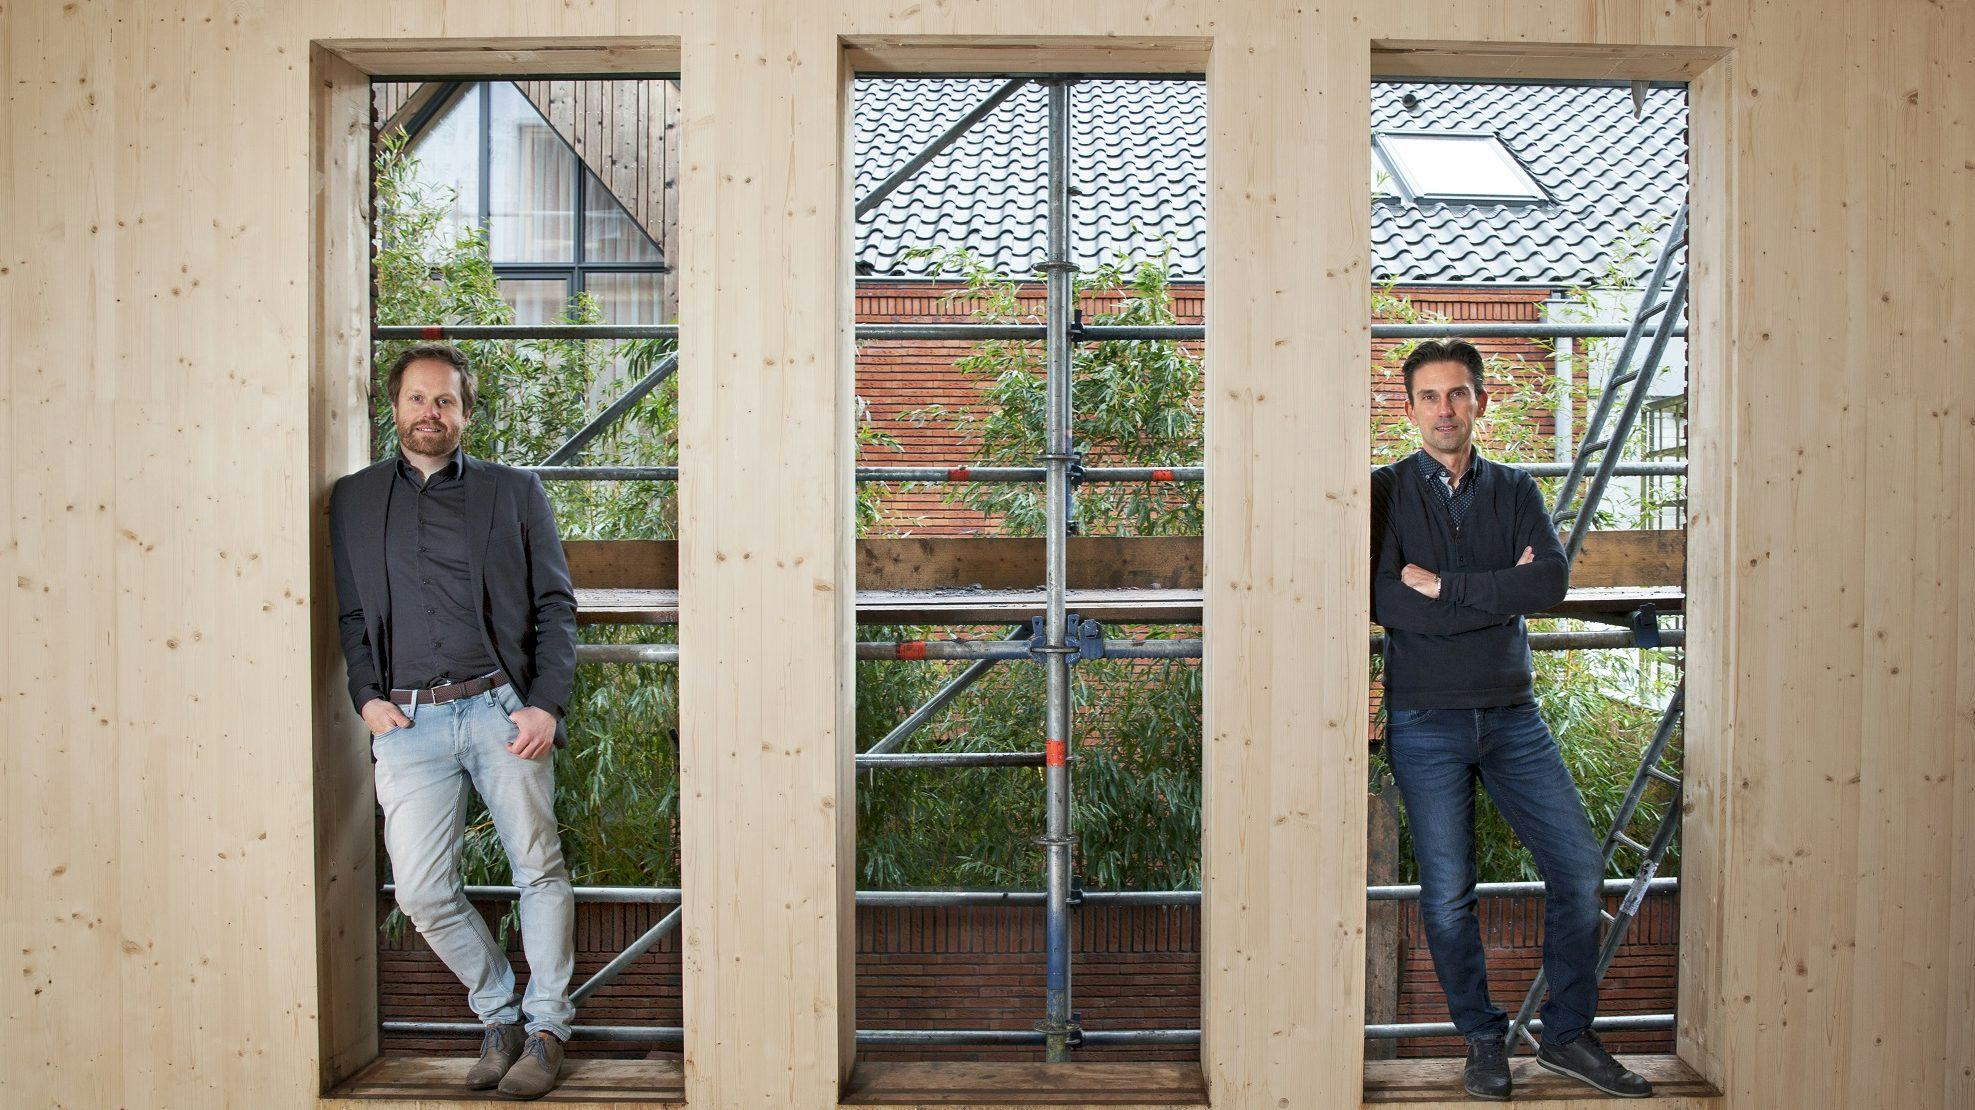 Midden web Pilfer Goedkoop woningen bouwen in hout? Dit project in Delft bewijst dat het kan